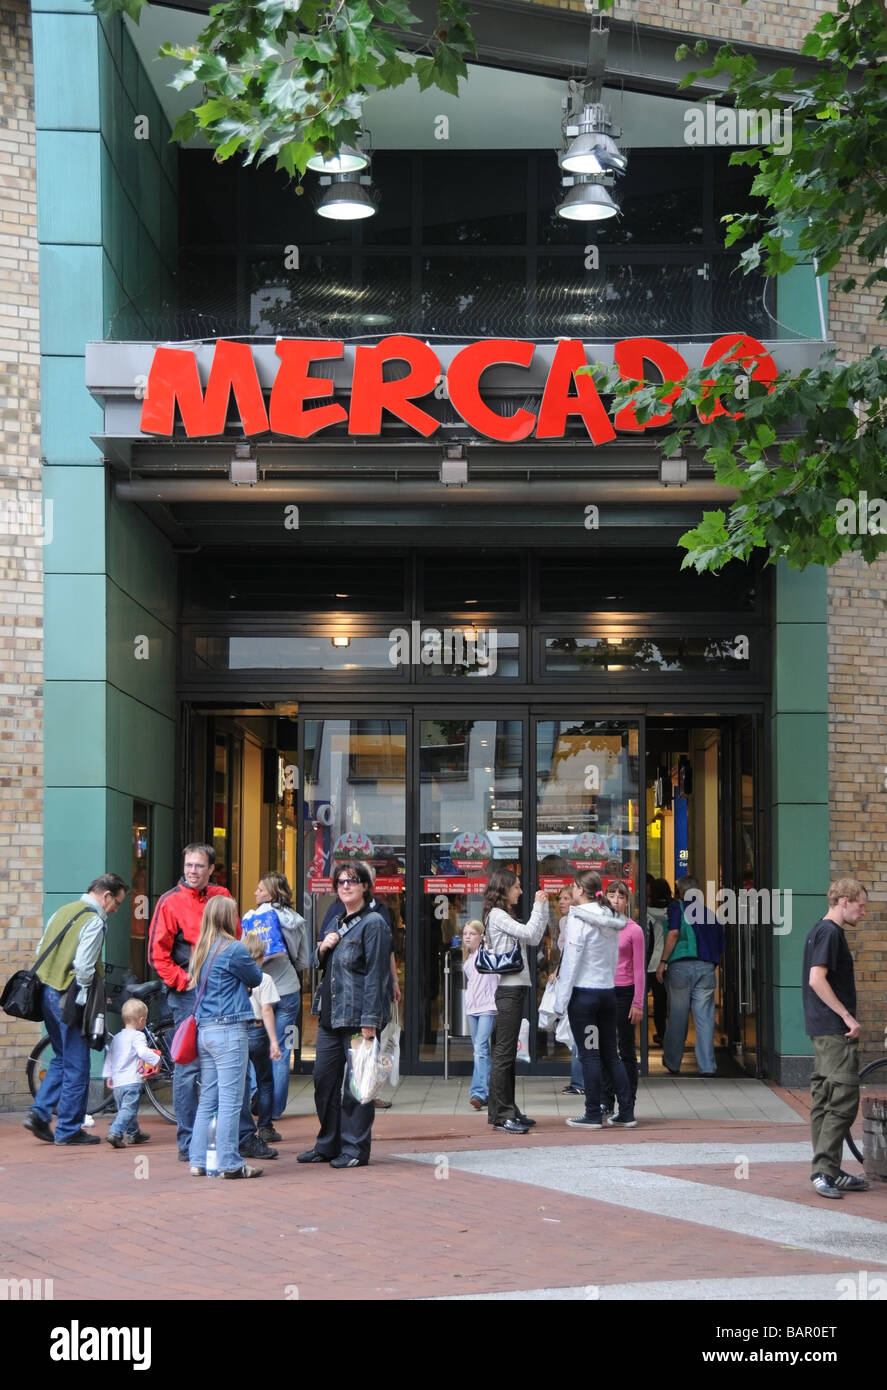 Eintrag vom Einkaufszentrum "Mercado" in Ottensen Altona, Hamburg, Deutschland Stockfoto